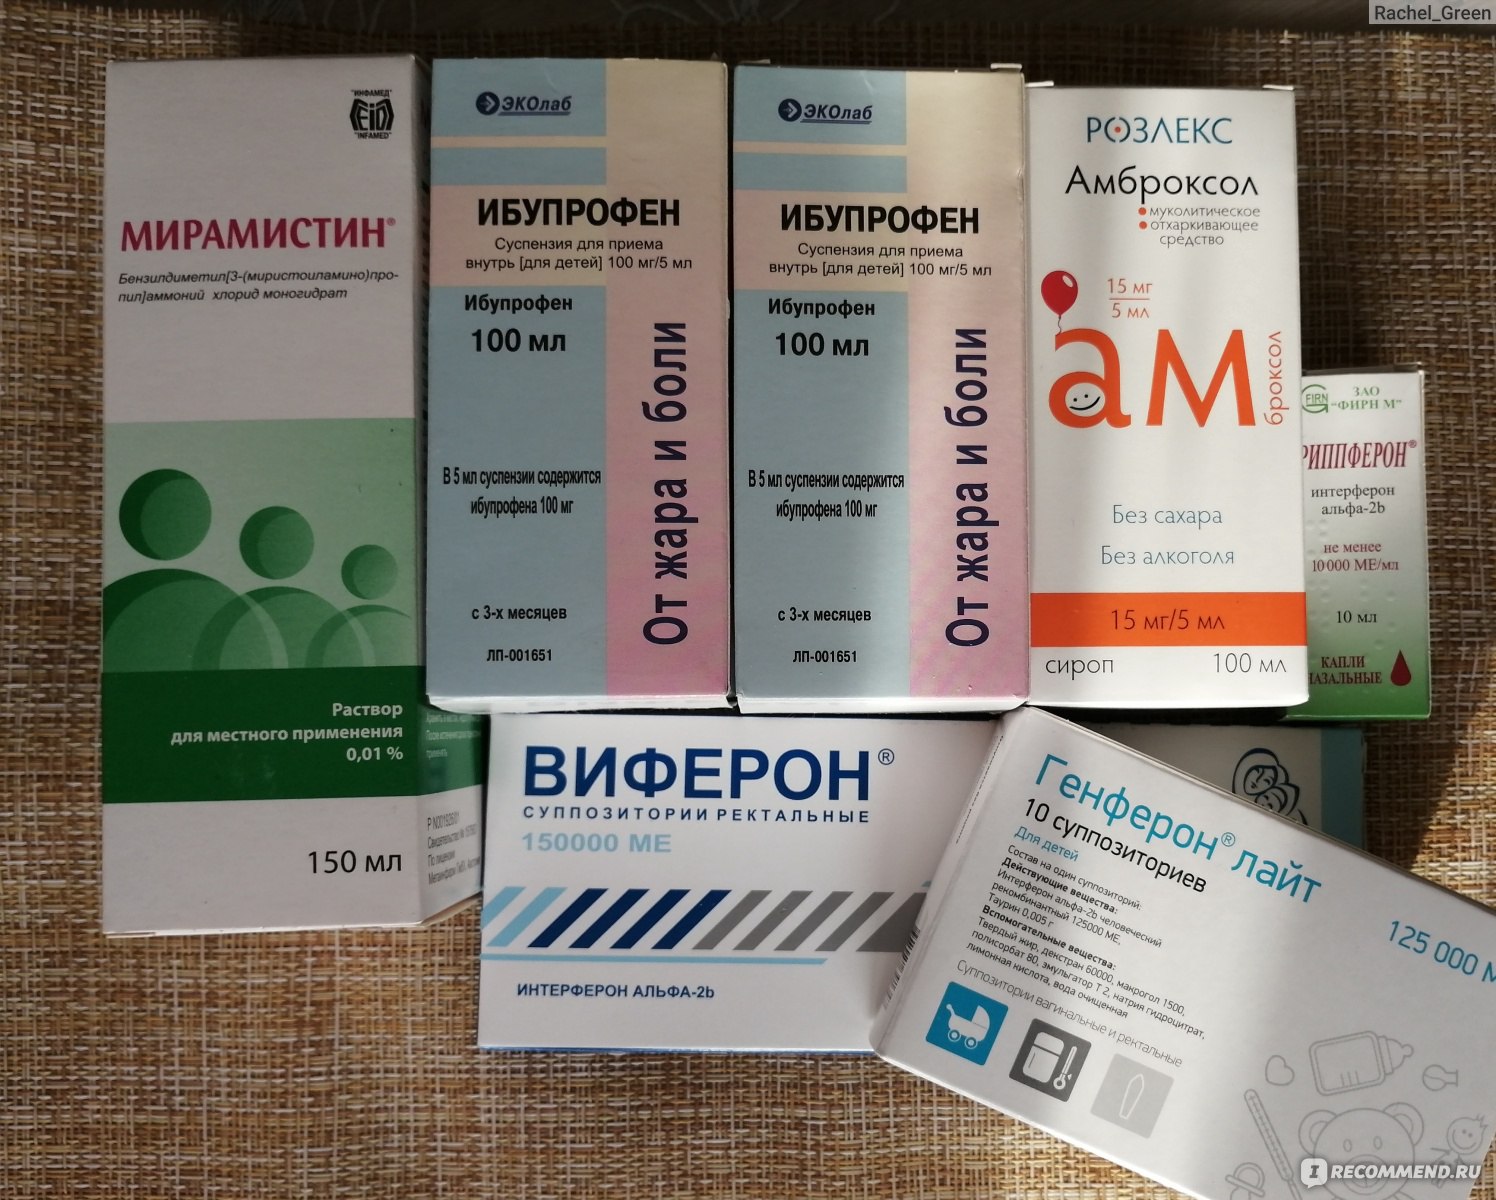 Ибупрофен – инструкция по применению, механизм действия, отзывы, показания и противопоказания